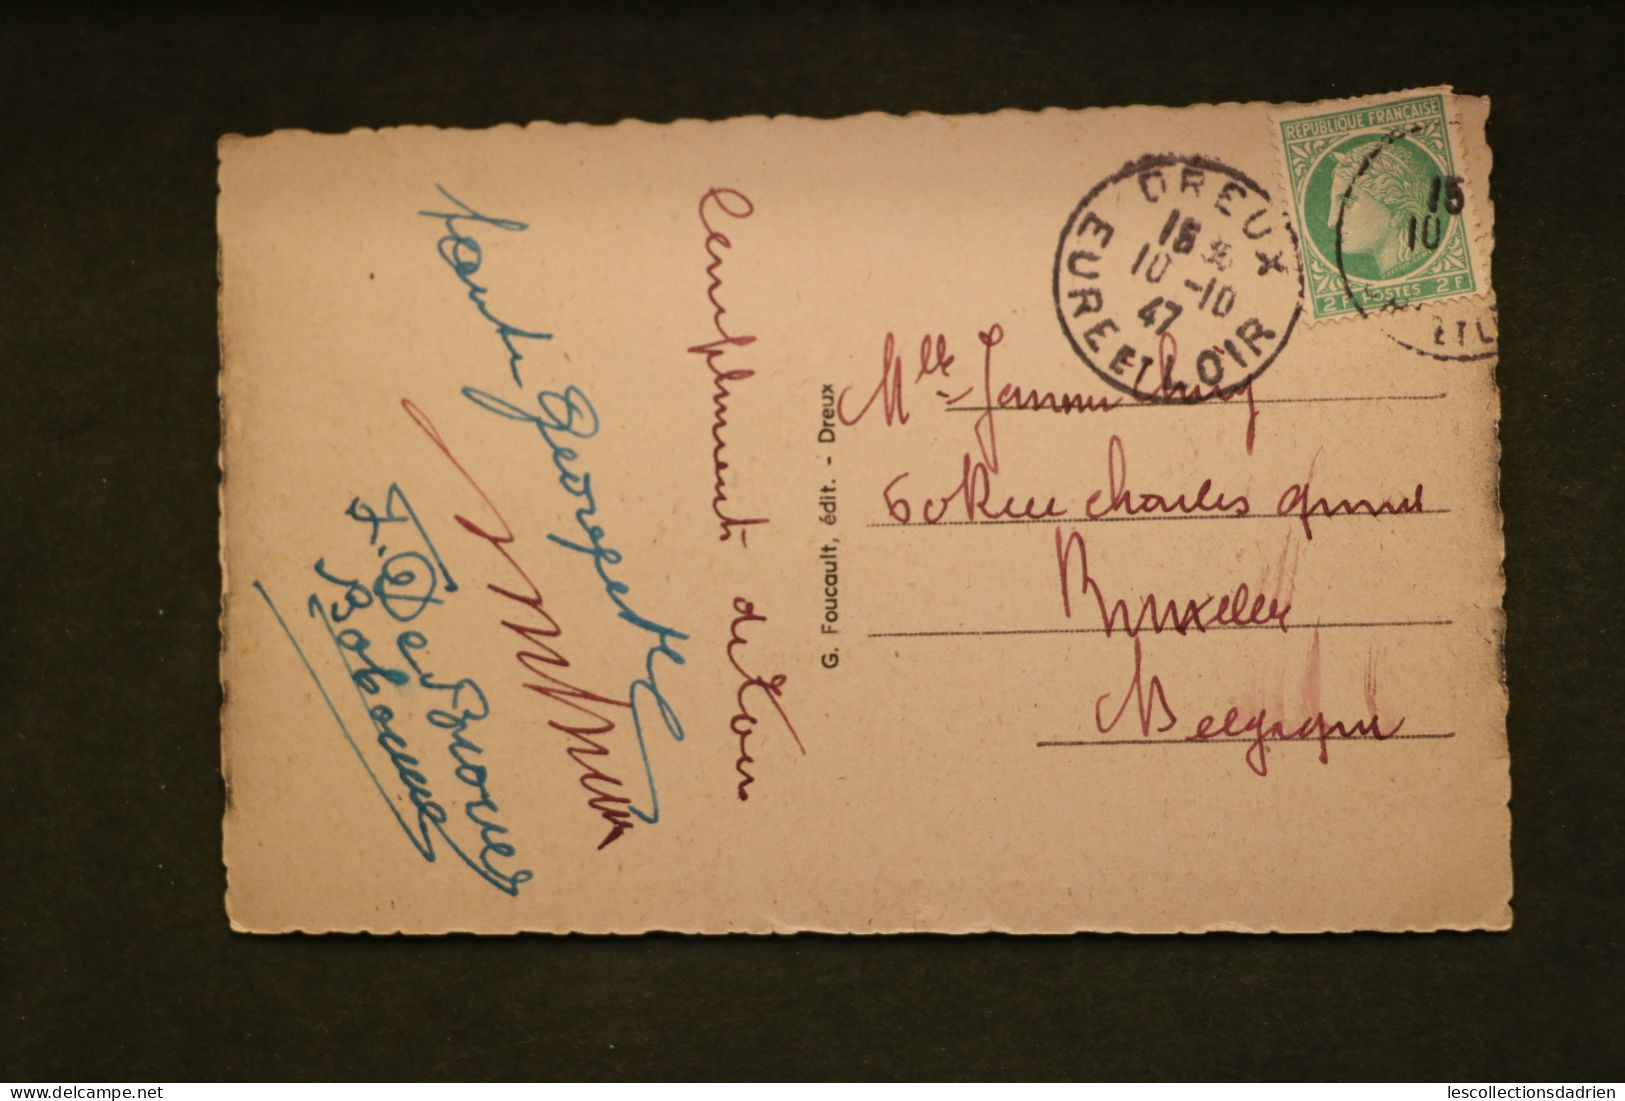 Carte postale ancienne Dreux chapelle Saint-Louis sépulture famille d'Orléans 1947